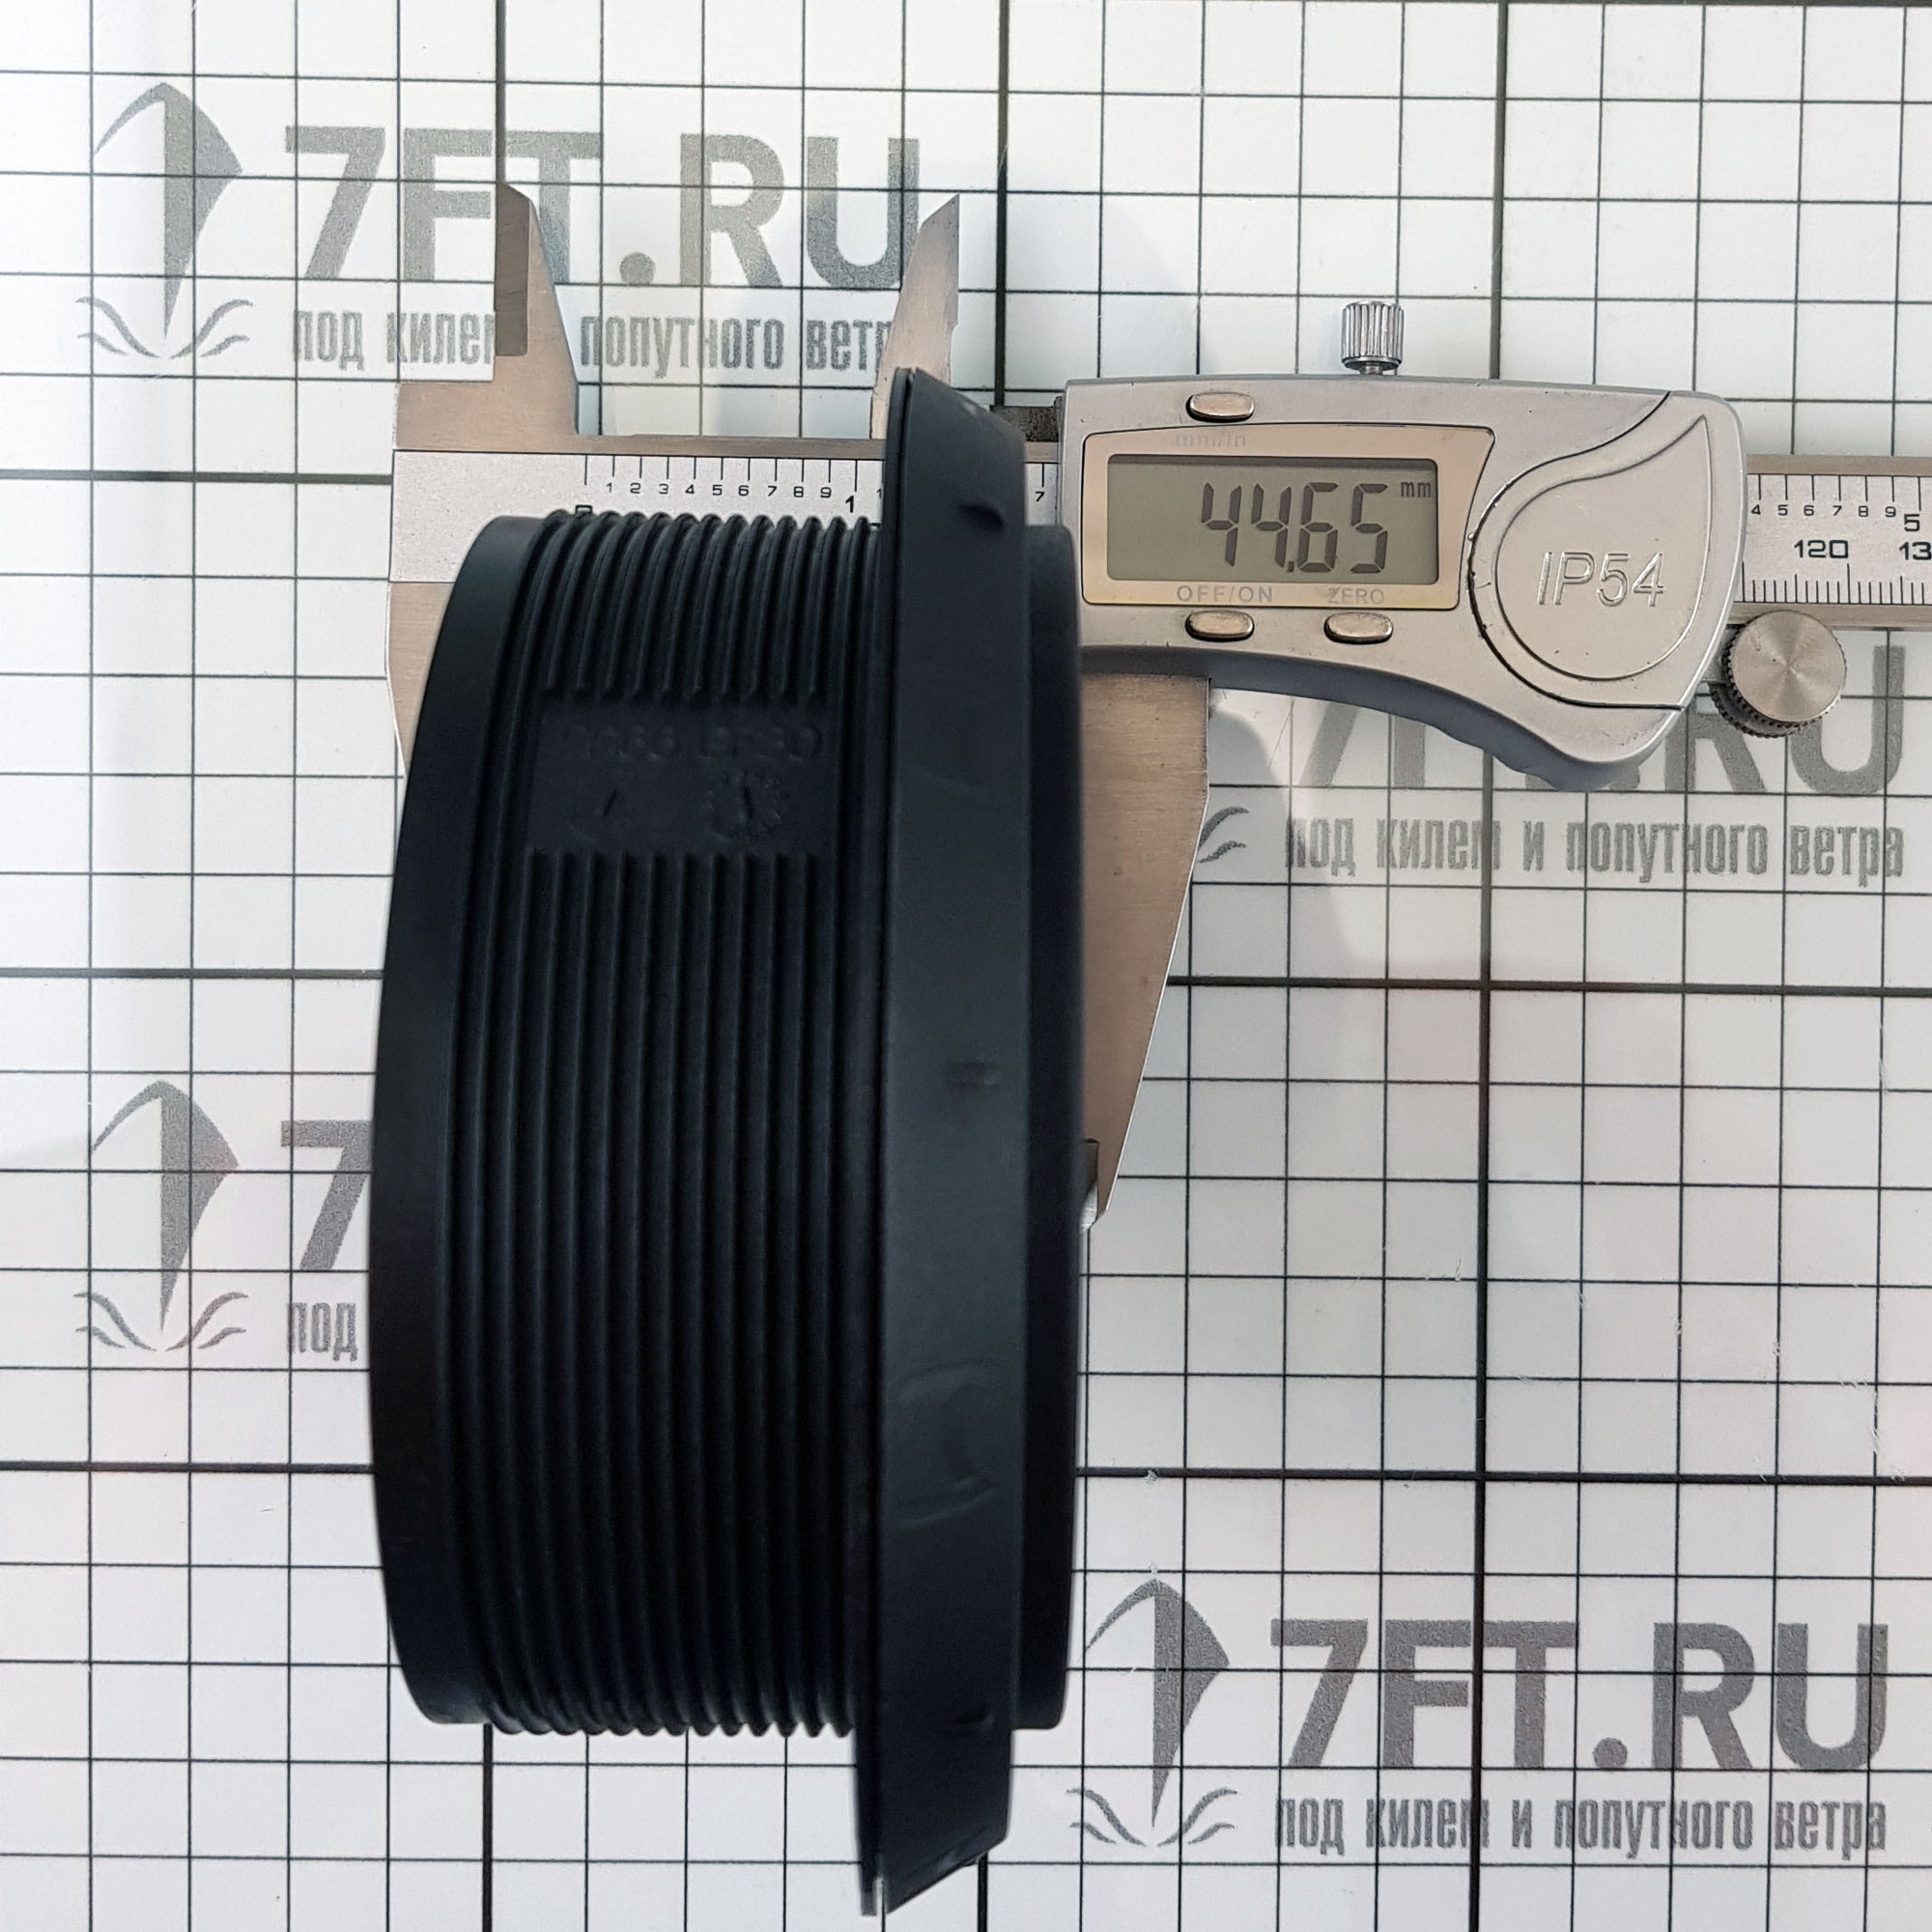 Купить Дефлектор Webasto 1320932A Ø90мм 90° поворотный из черного пластика 7ft.ru в интернет магазине Семь Футов